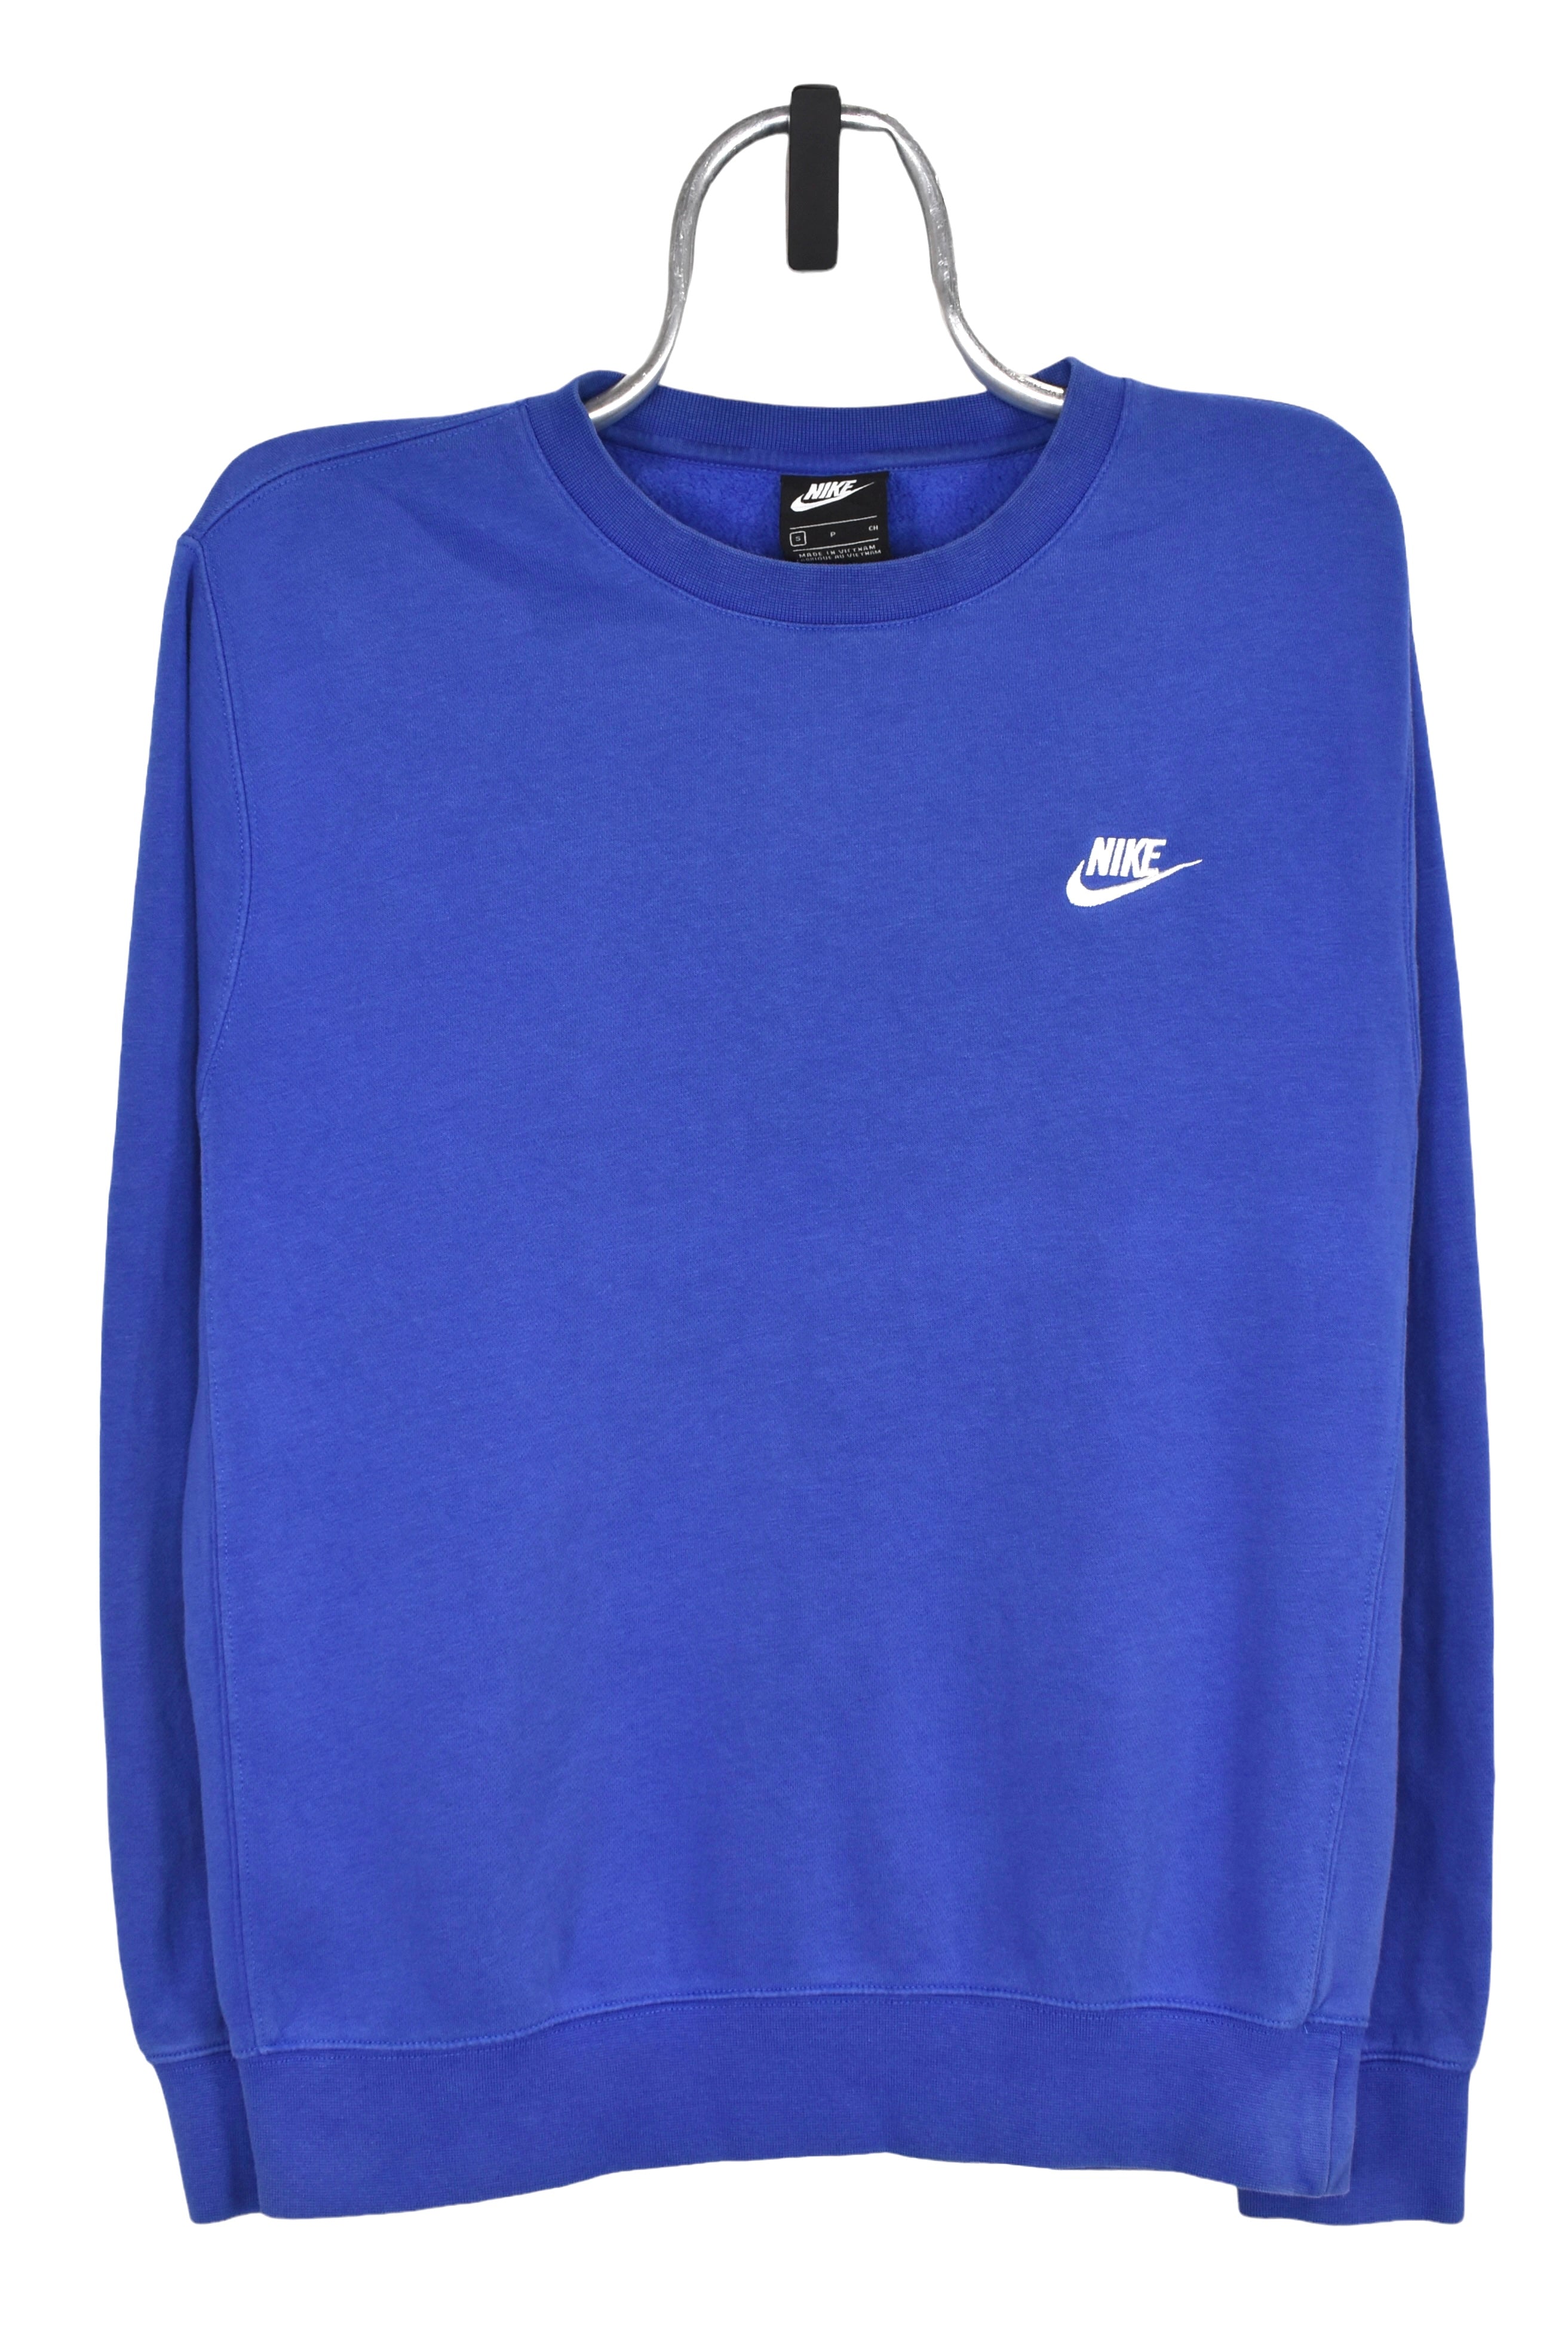 Vintage Nike sweatshirt (M), blue embroidered crewneck